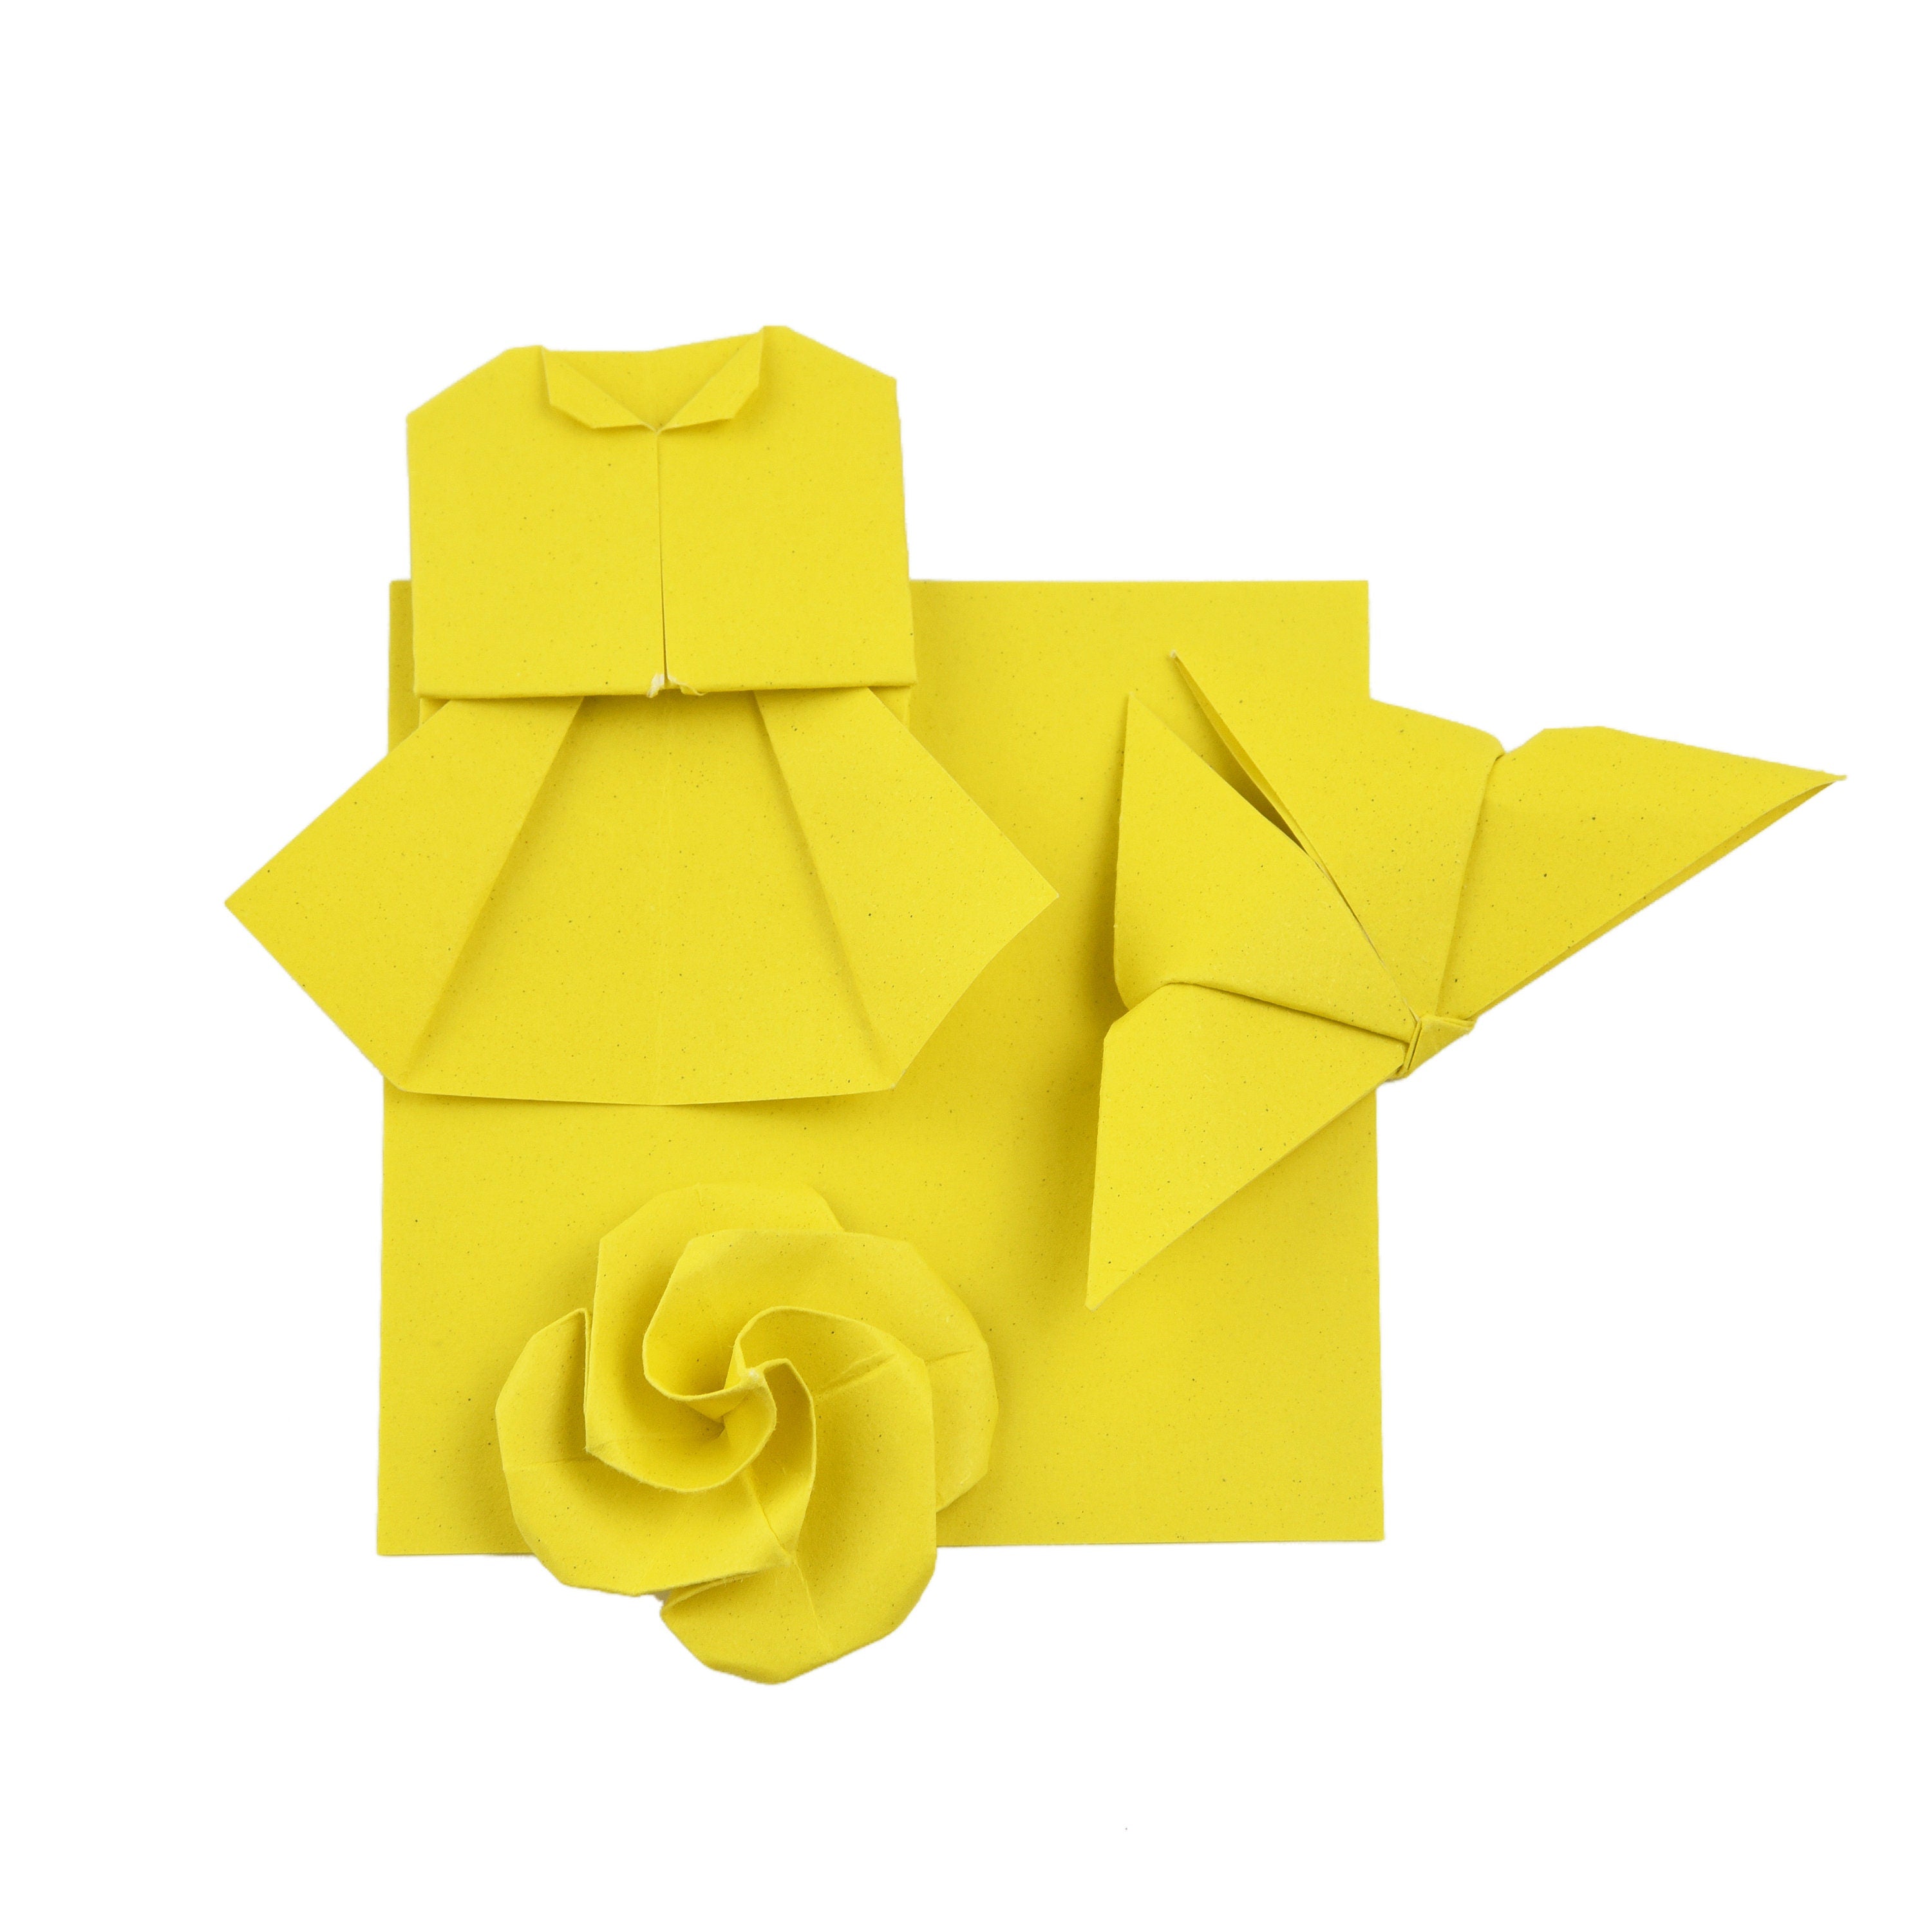 100 Hojas de Papel Origami - 6x6 pulgadas - Paquete de Papel Cuadrado para Plegar, Grullas de Origami y Decoración - S01